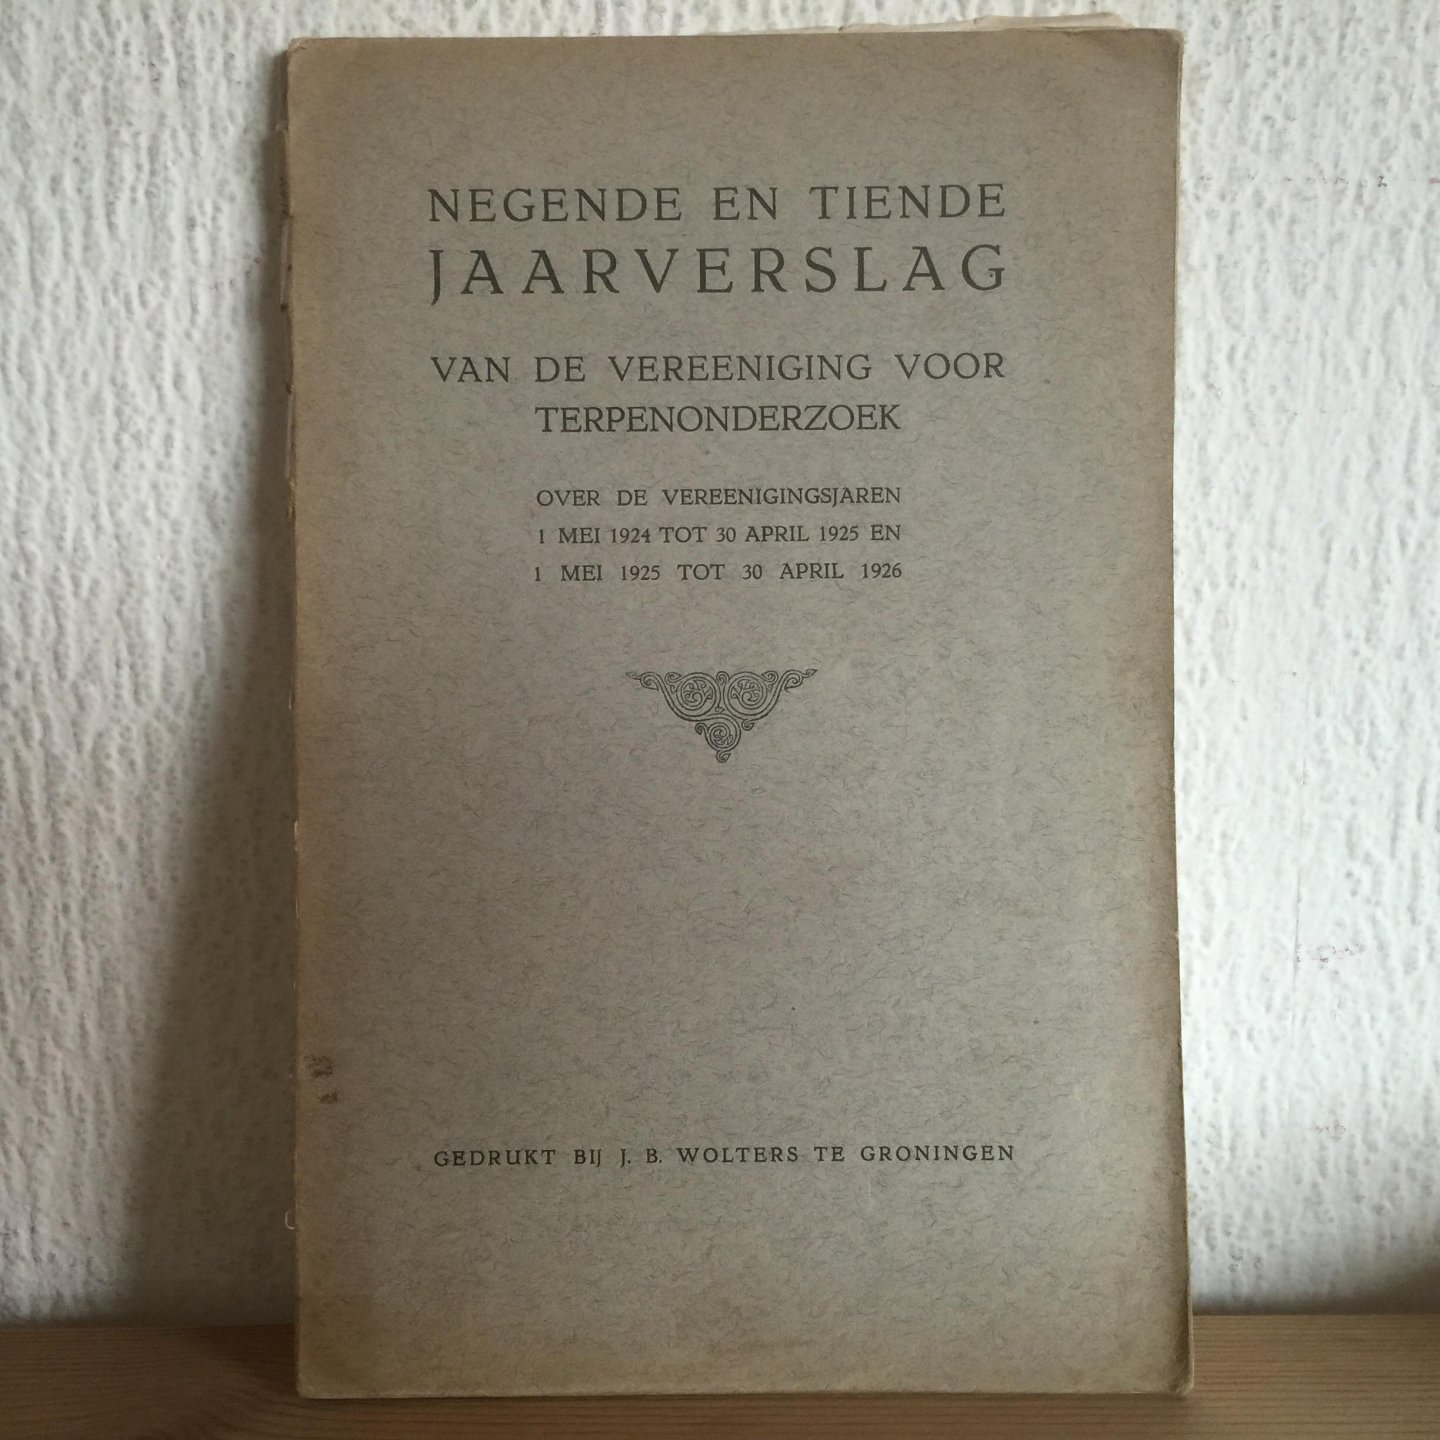  - 1924-1926 ,Negende en Tiende jaarverslag TERPENONDERZOEK